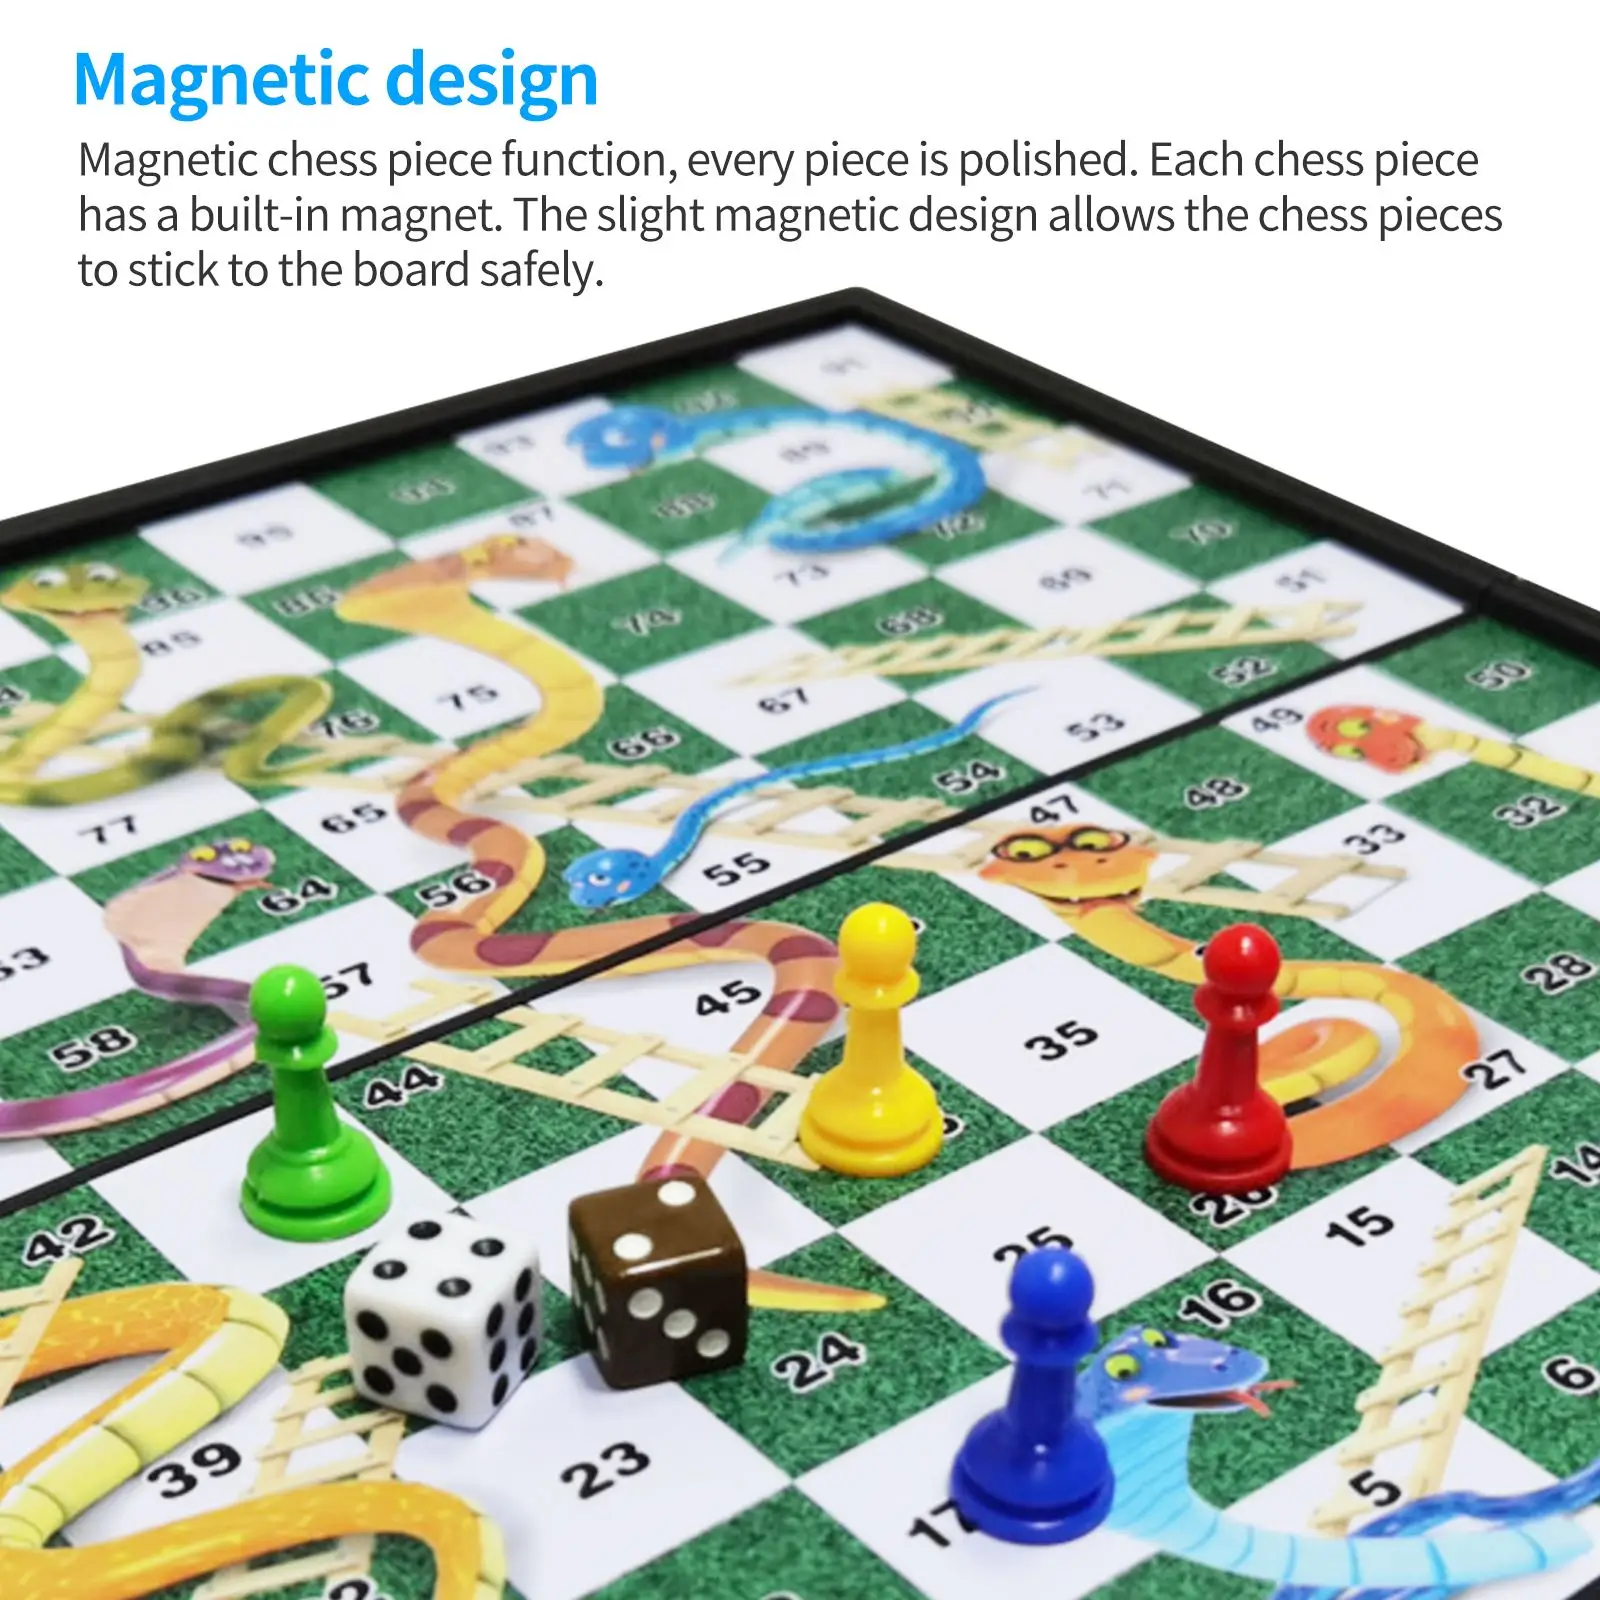 

Складная магнитная доска змея и лестницы шахматная игра Интерактивная настольная игрушка для вечеринки интерактивные игры для вечеринки Р...